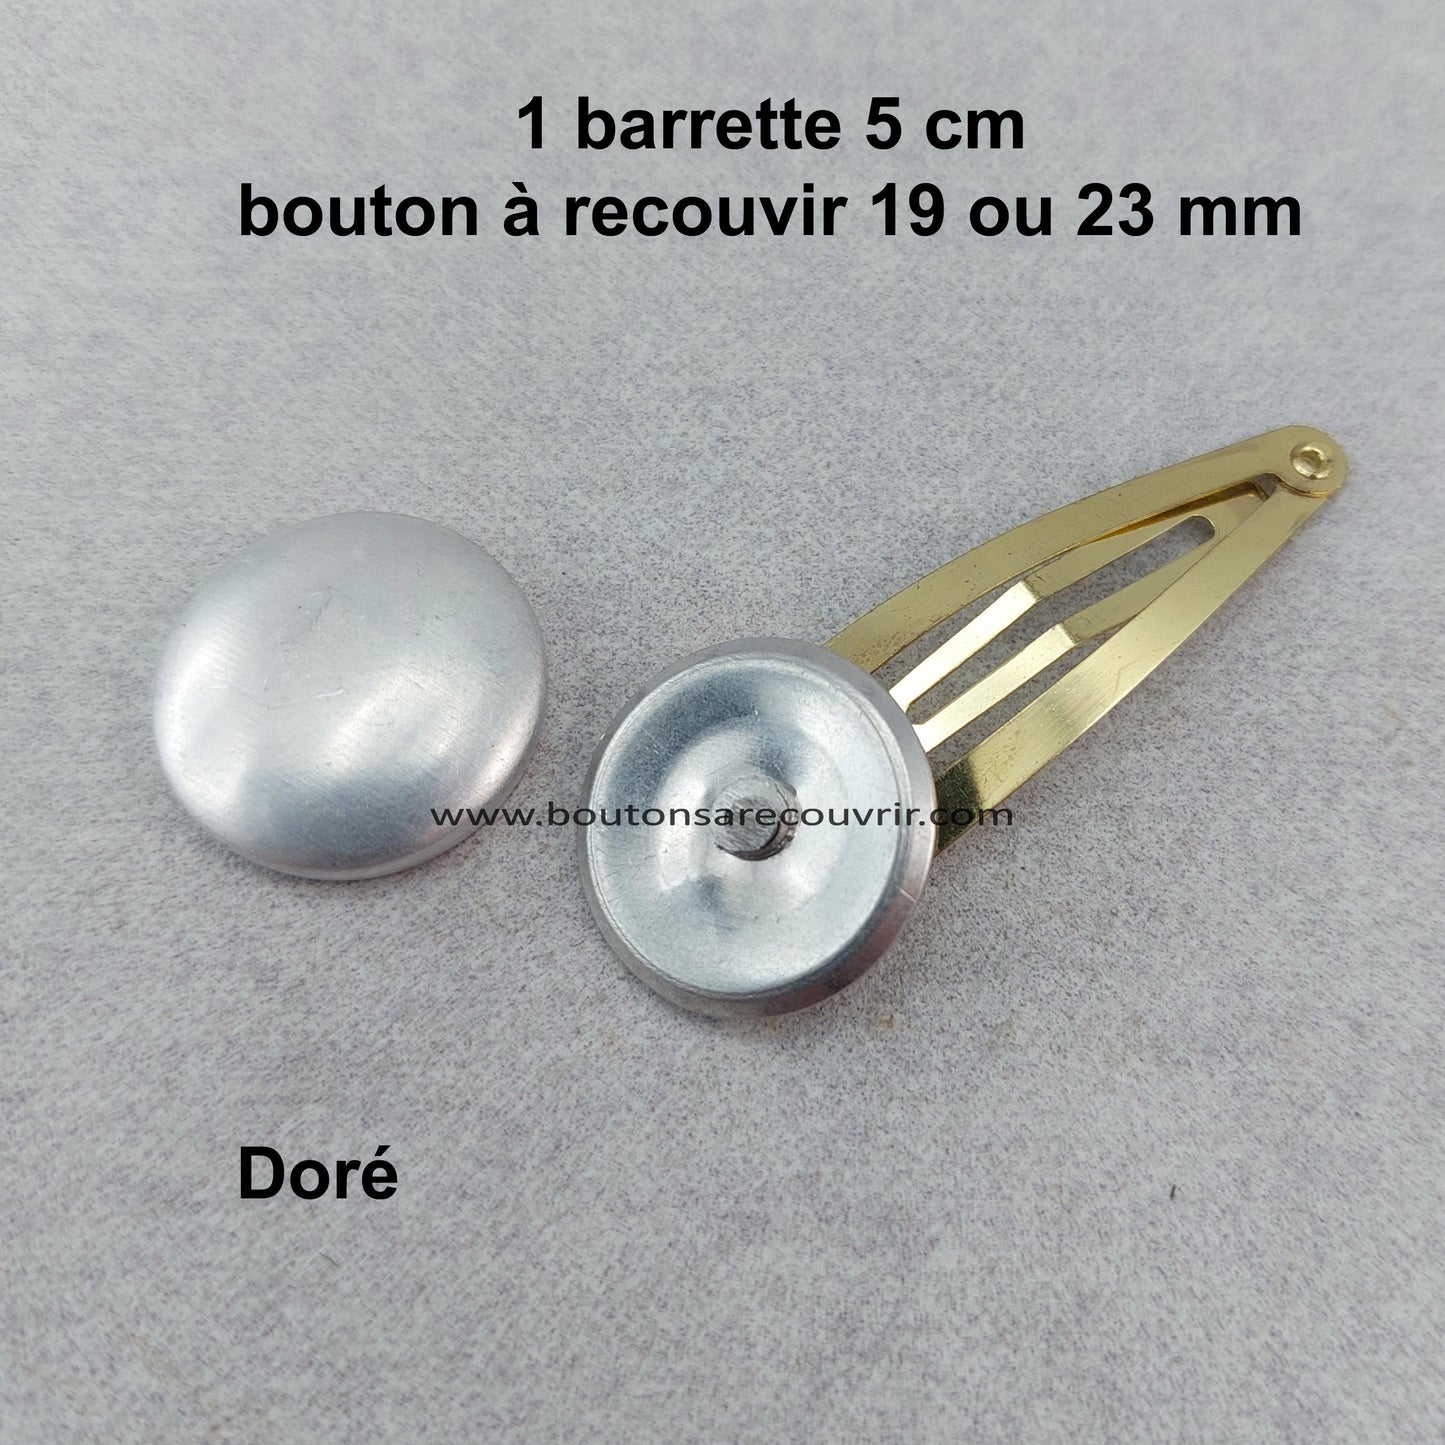 Barrette - bouton à recouvrir 19 ou 23 mm